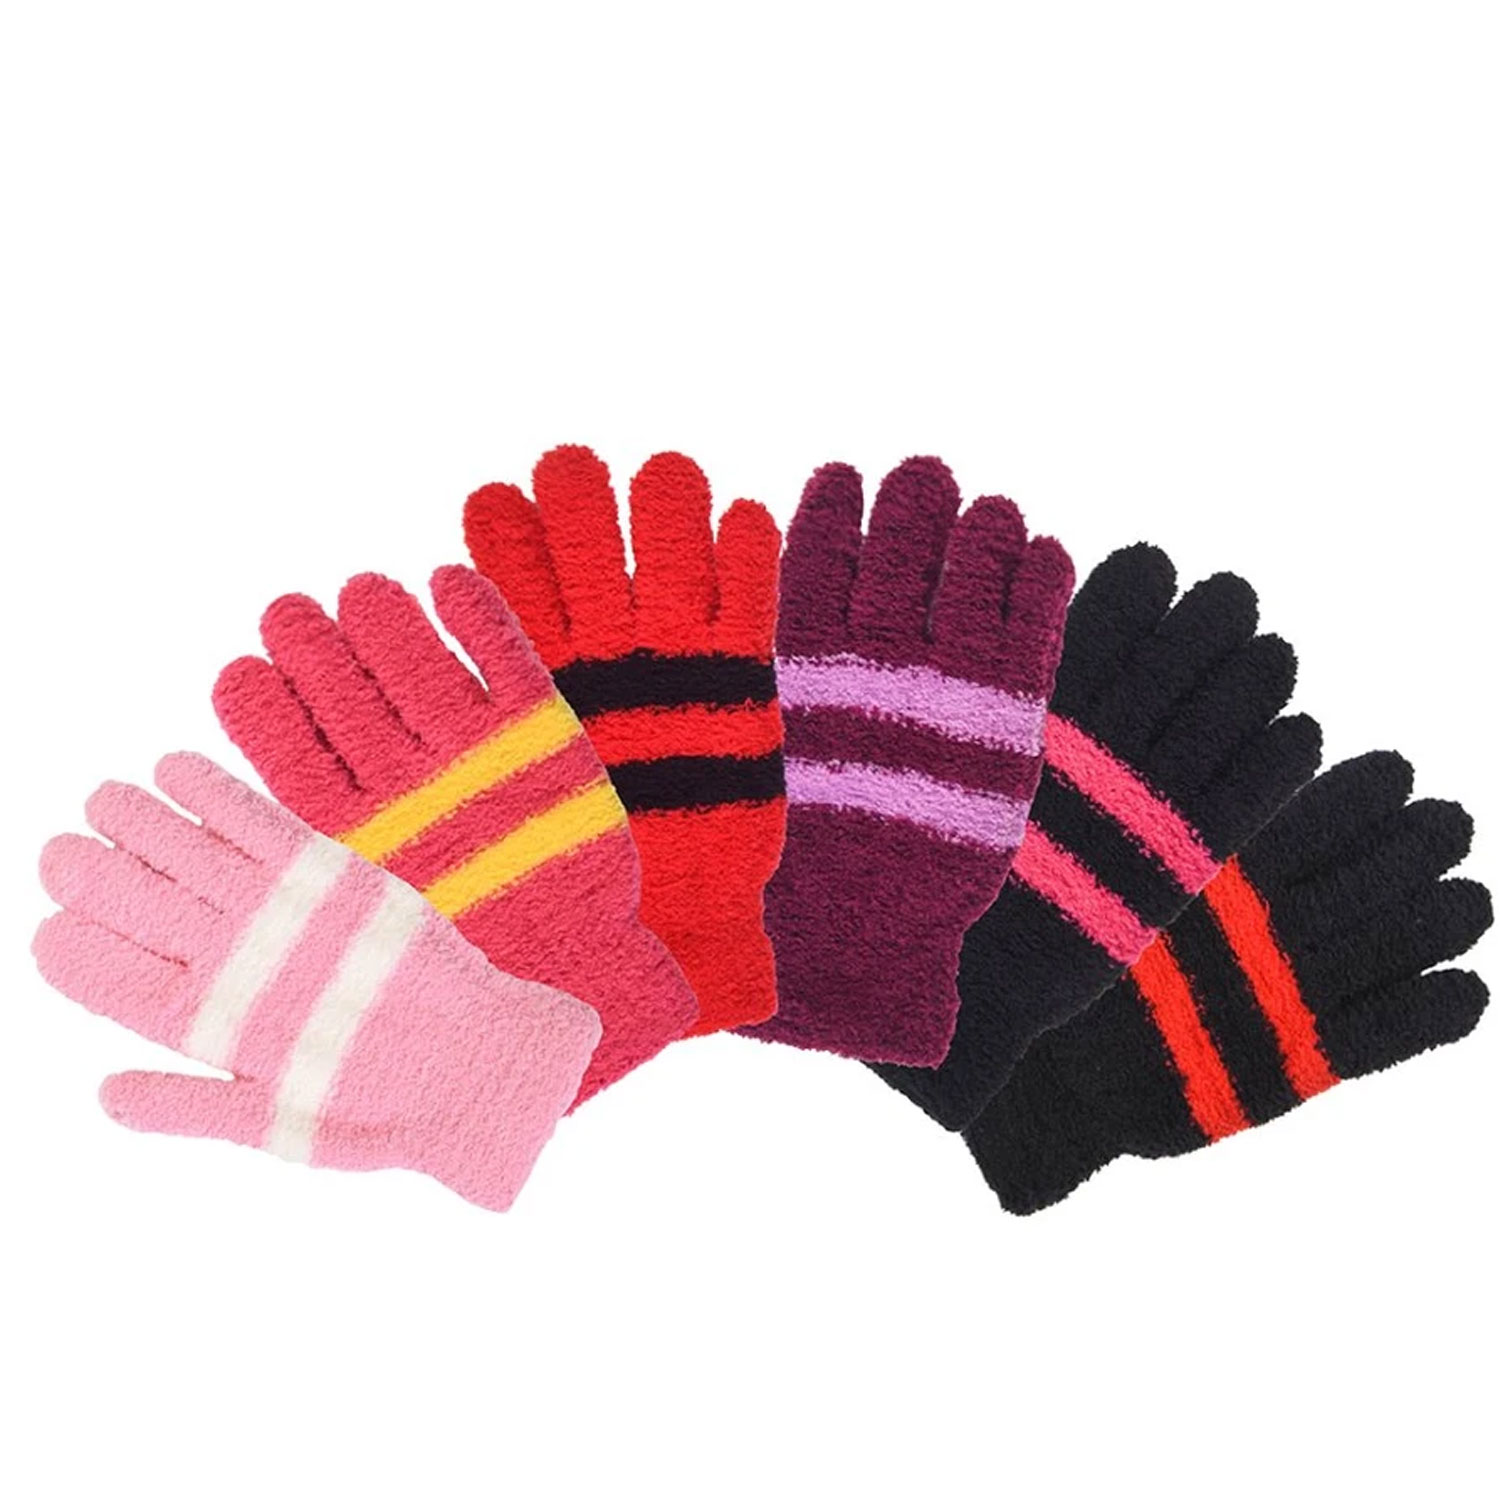  Ladies Plush Magic Gloves 6 Pairs